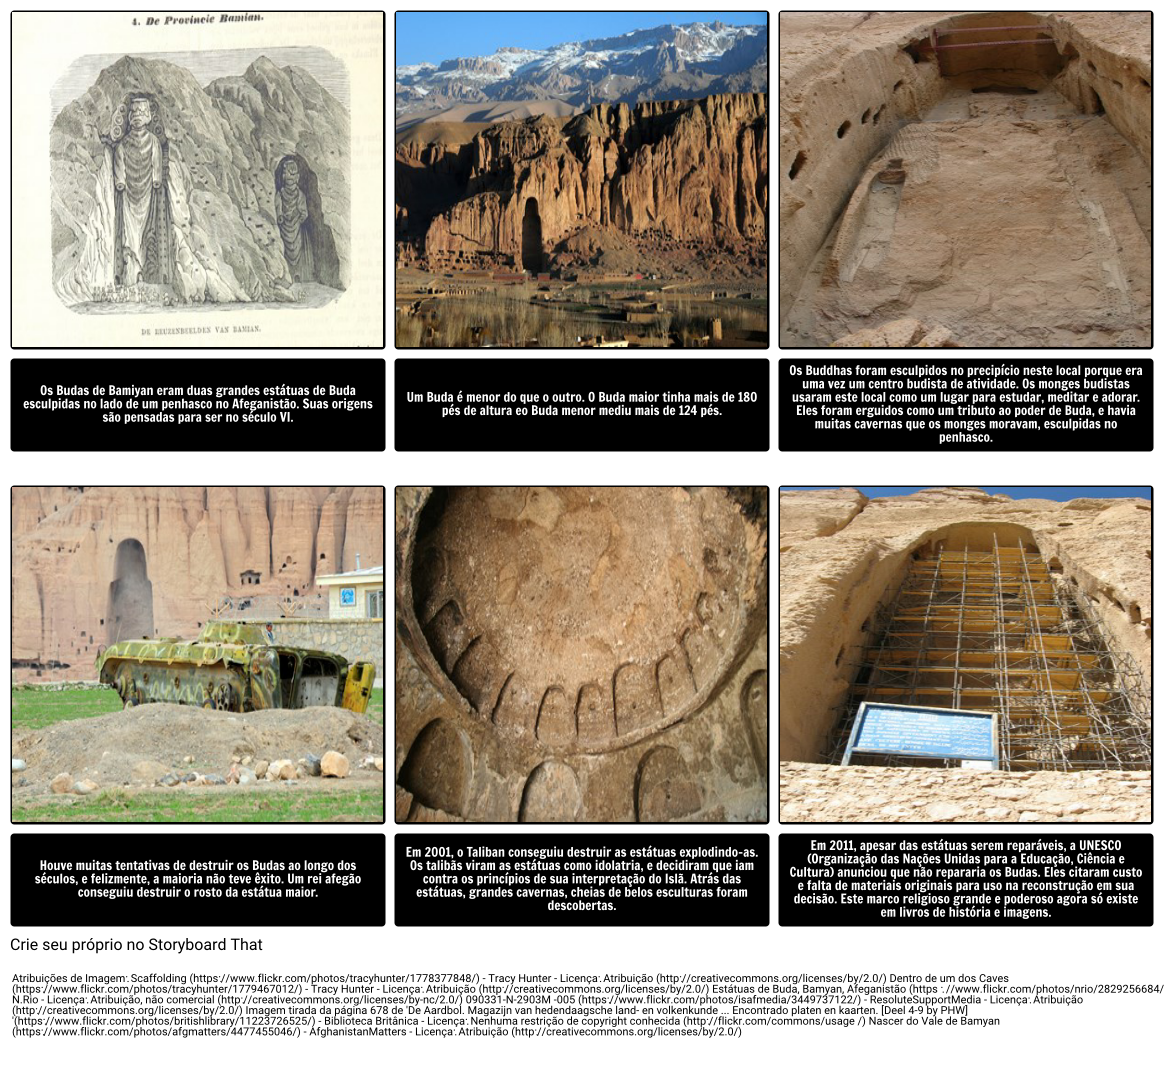 Conexão com o tema de "Ozymandias": Os Budas de Bamiyan